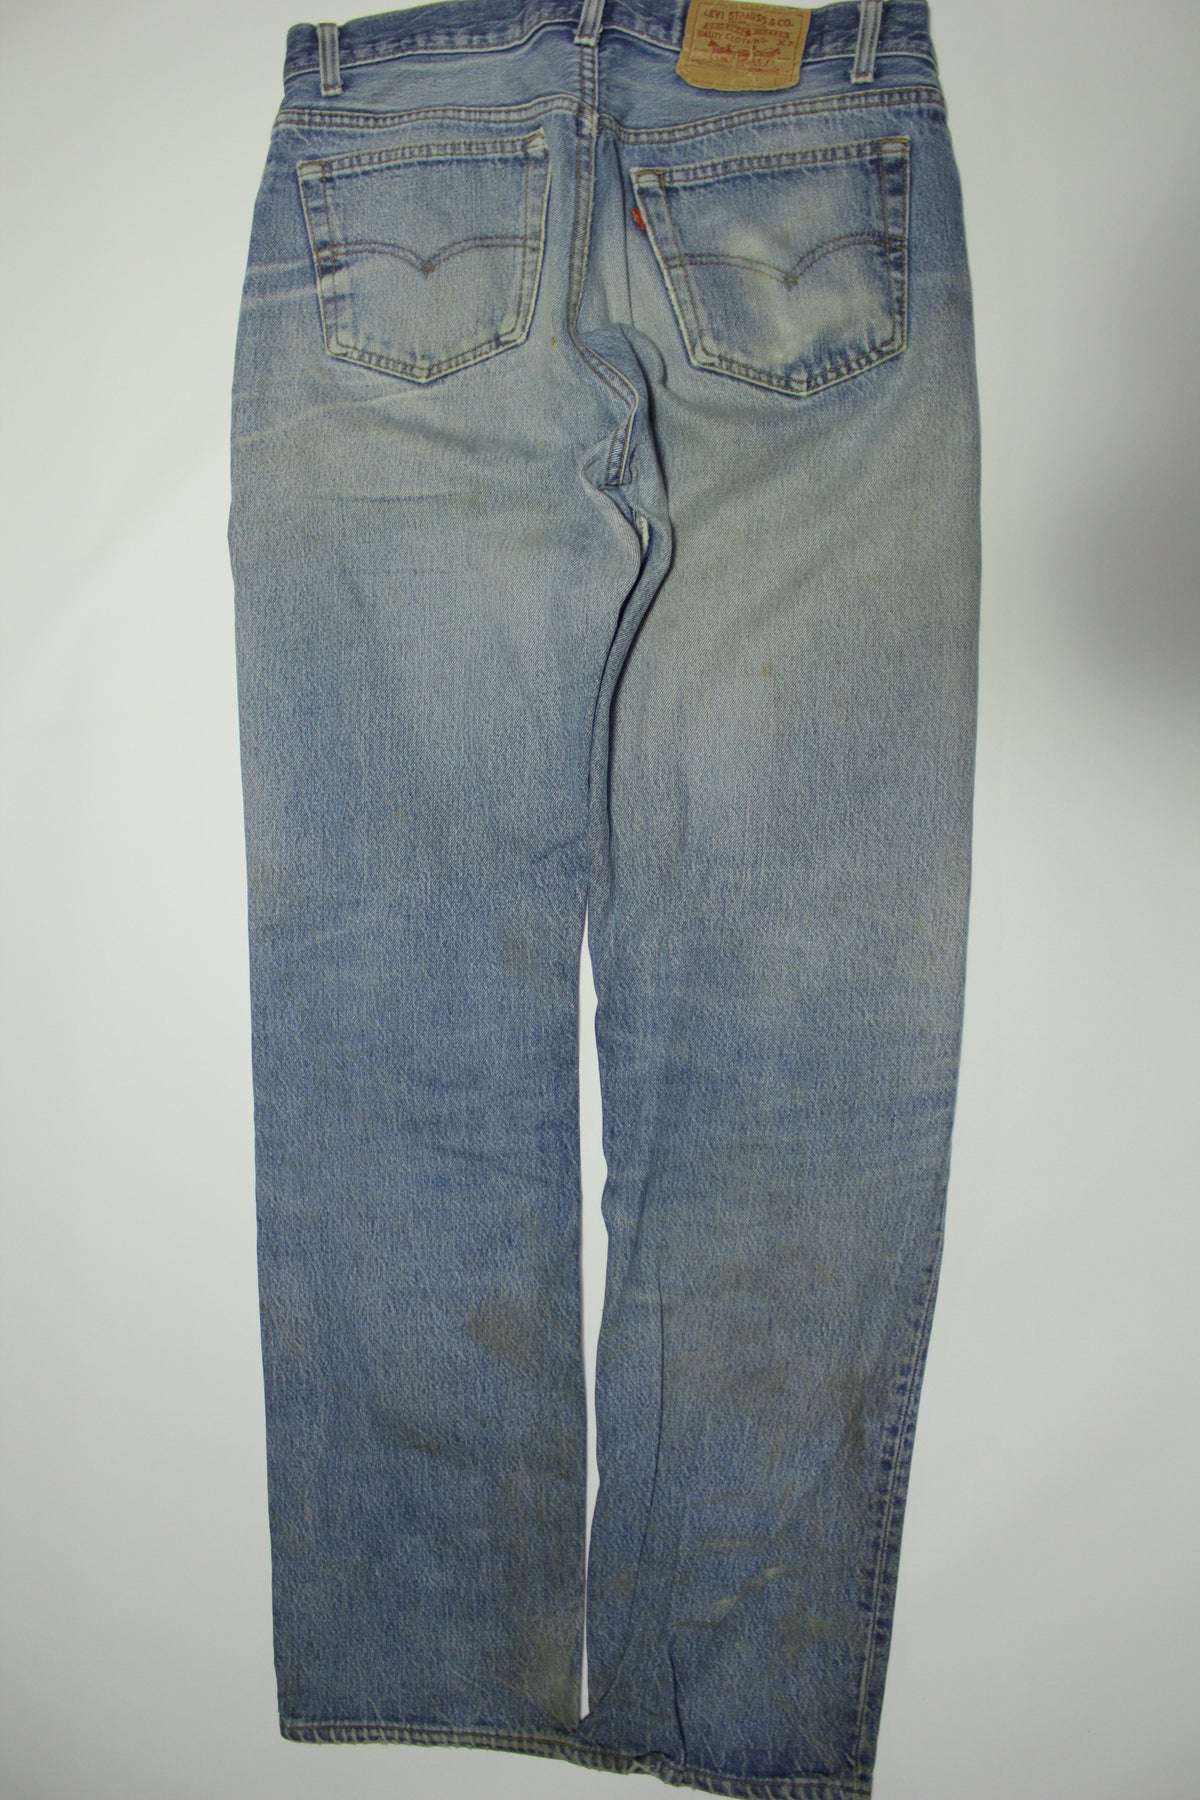 Levis 501xx Red Tab Vintage 80s Button Fly Denim Grunge Rocker Jeans